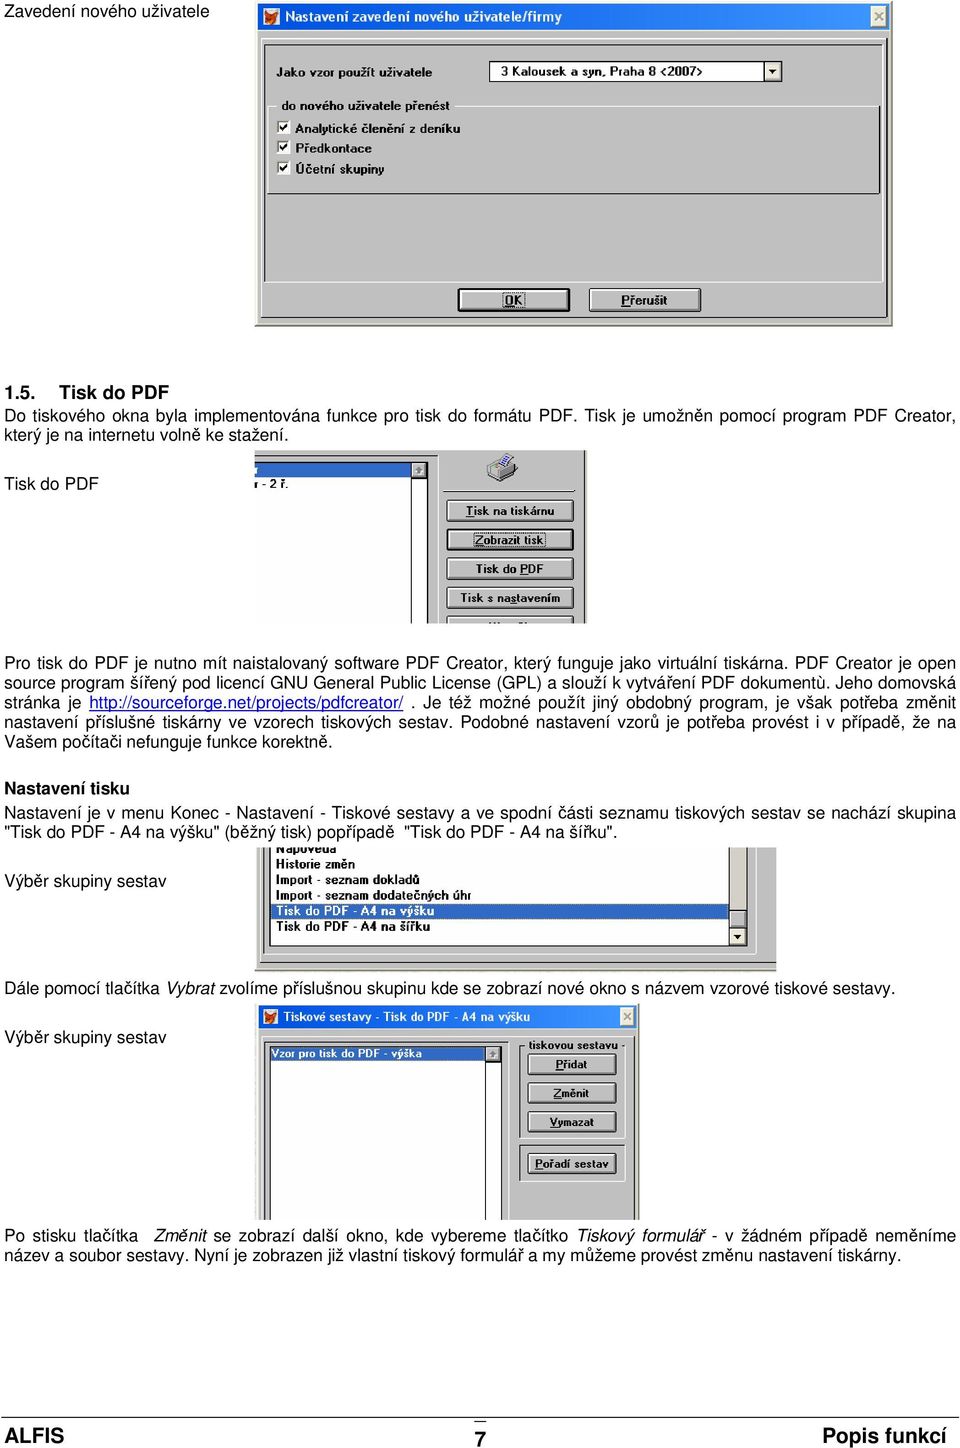 PDF Creator je open source program šířený pod licencí GNU General Public License (GPL) a slouží k vytváření PDF dokumentù. Jeho domovská stránka je http://sourceforge.net/projects/pdfcreator/.